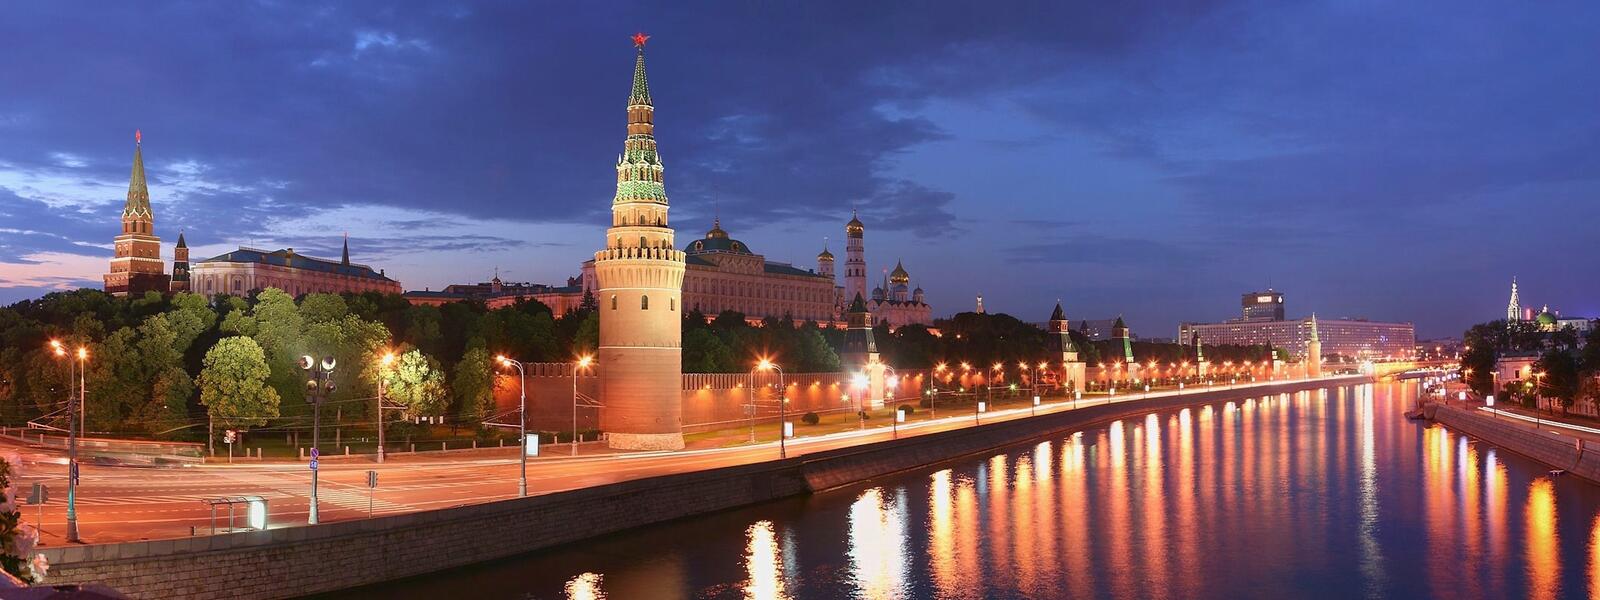 Обои Москва Столица Кремль на рабочий стол